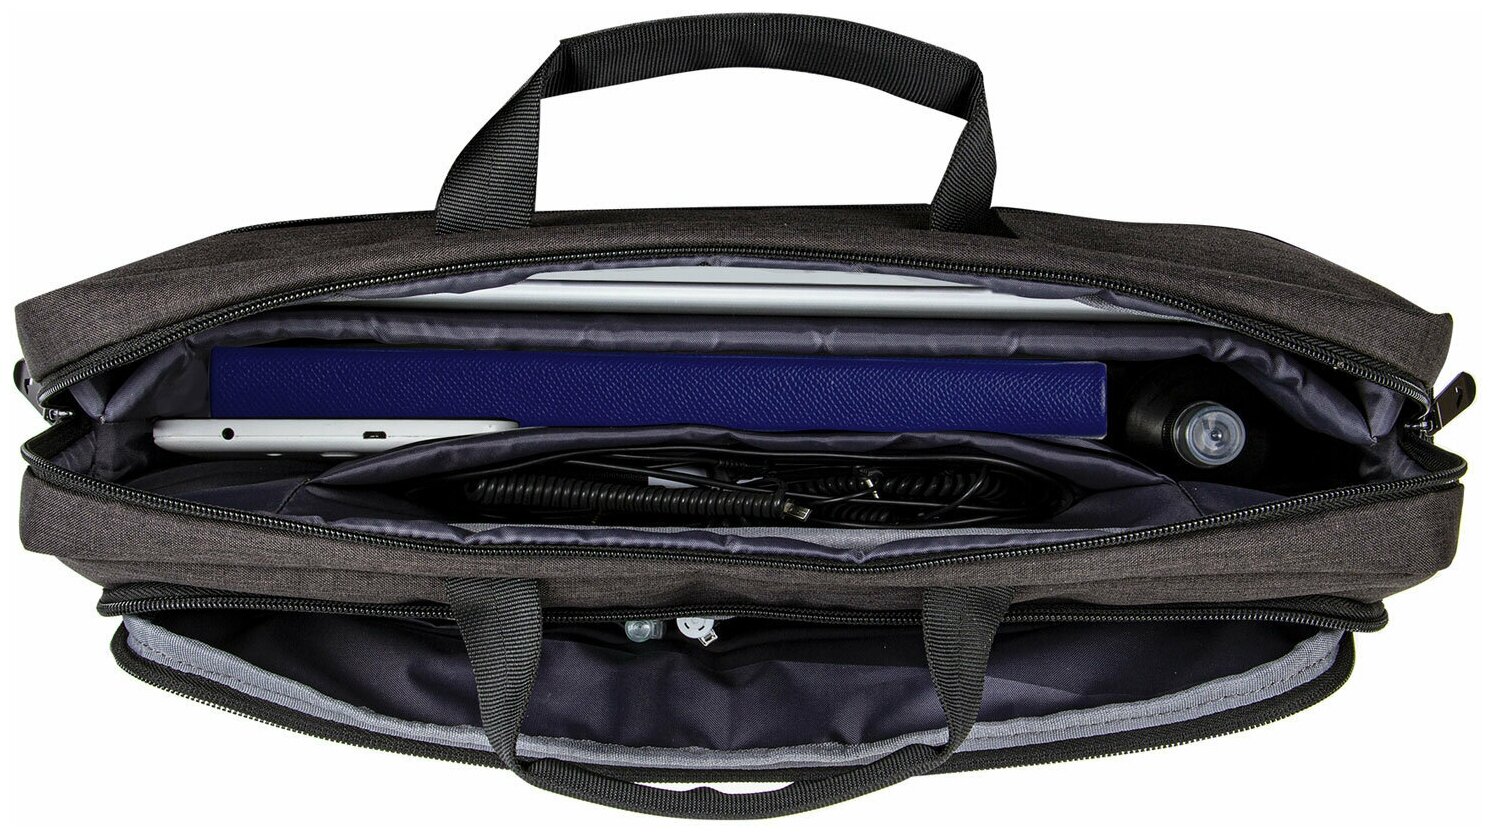 Сумка портфель BRAUBERG PRAGMATIC с отделением для ноутбука 15-16", "Vector", серо-черная, 30х42х8 см, 270827